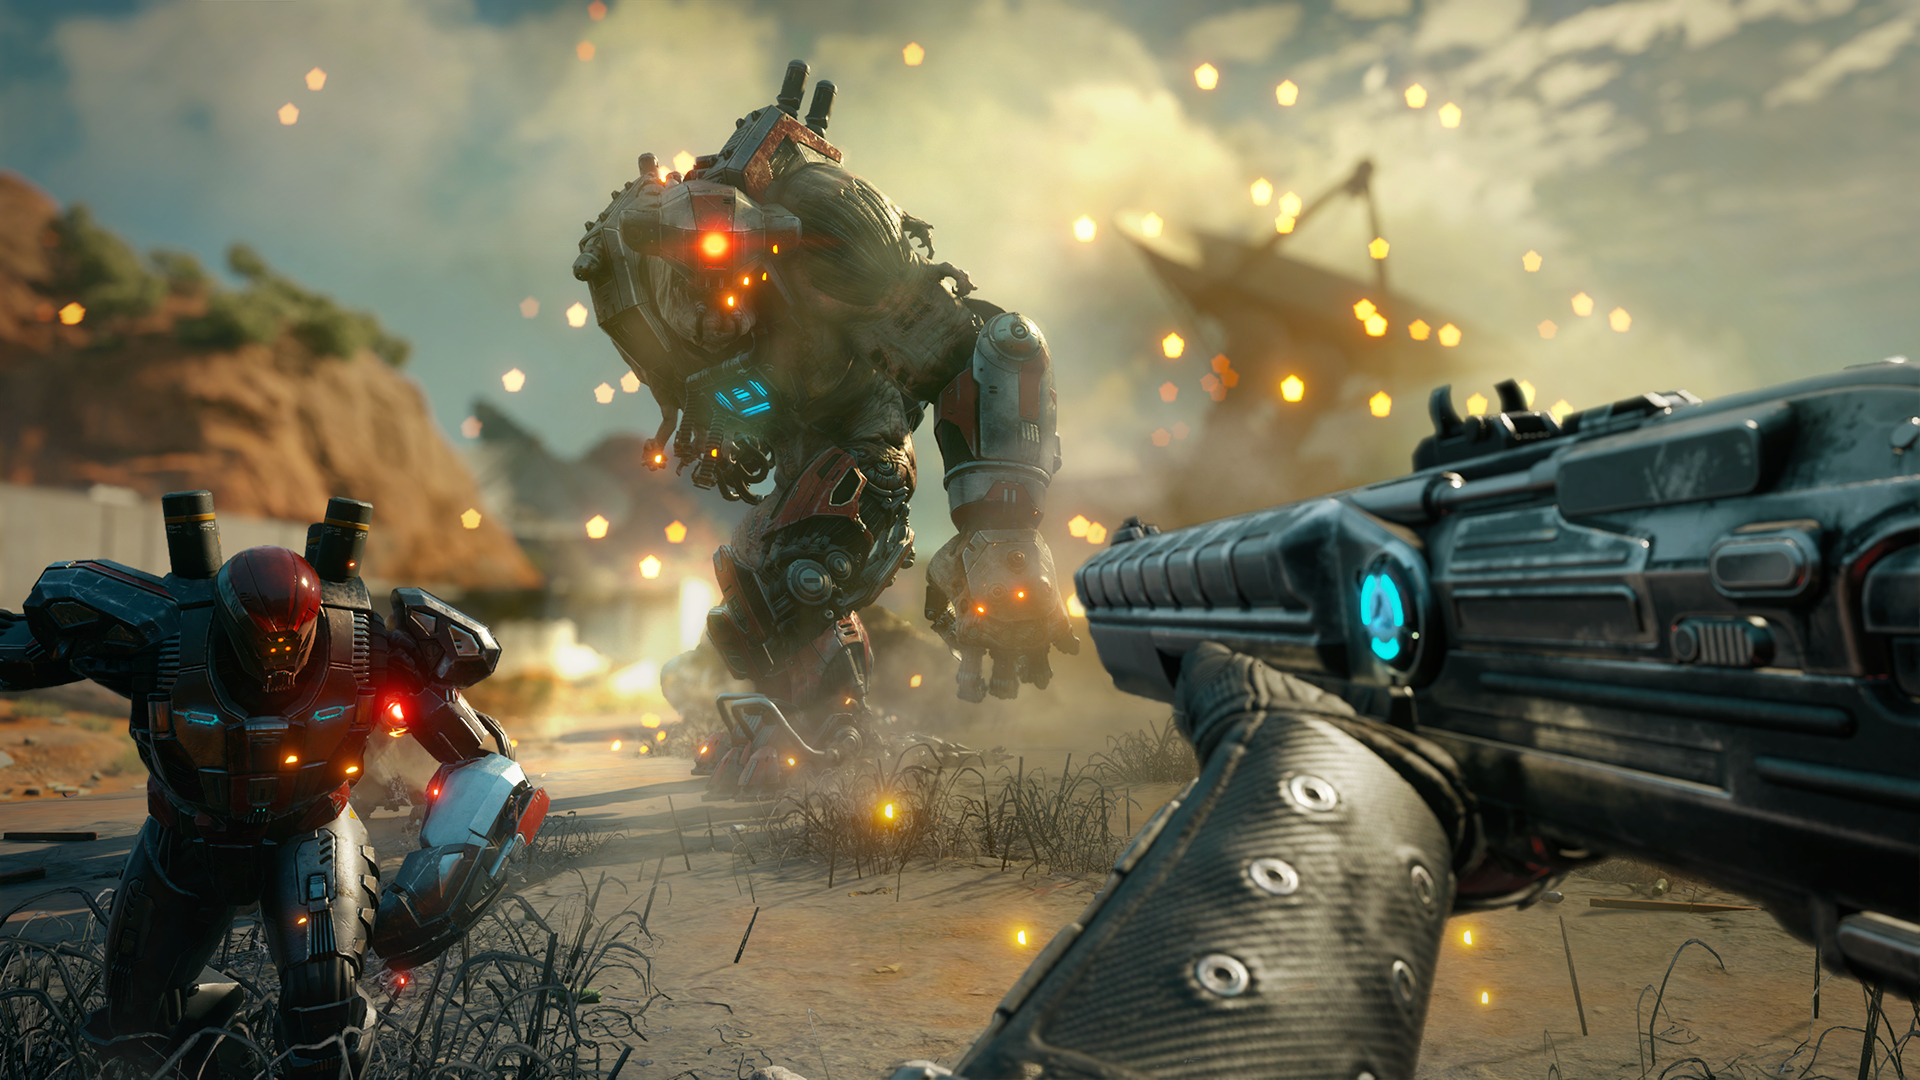 Gears of War 4 Gets Versus Social Cross-Play - IGN News